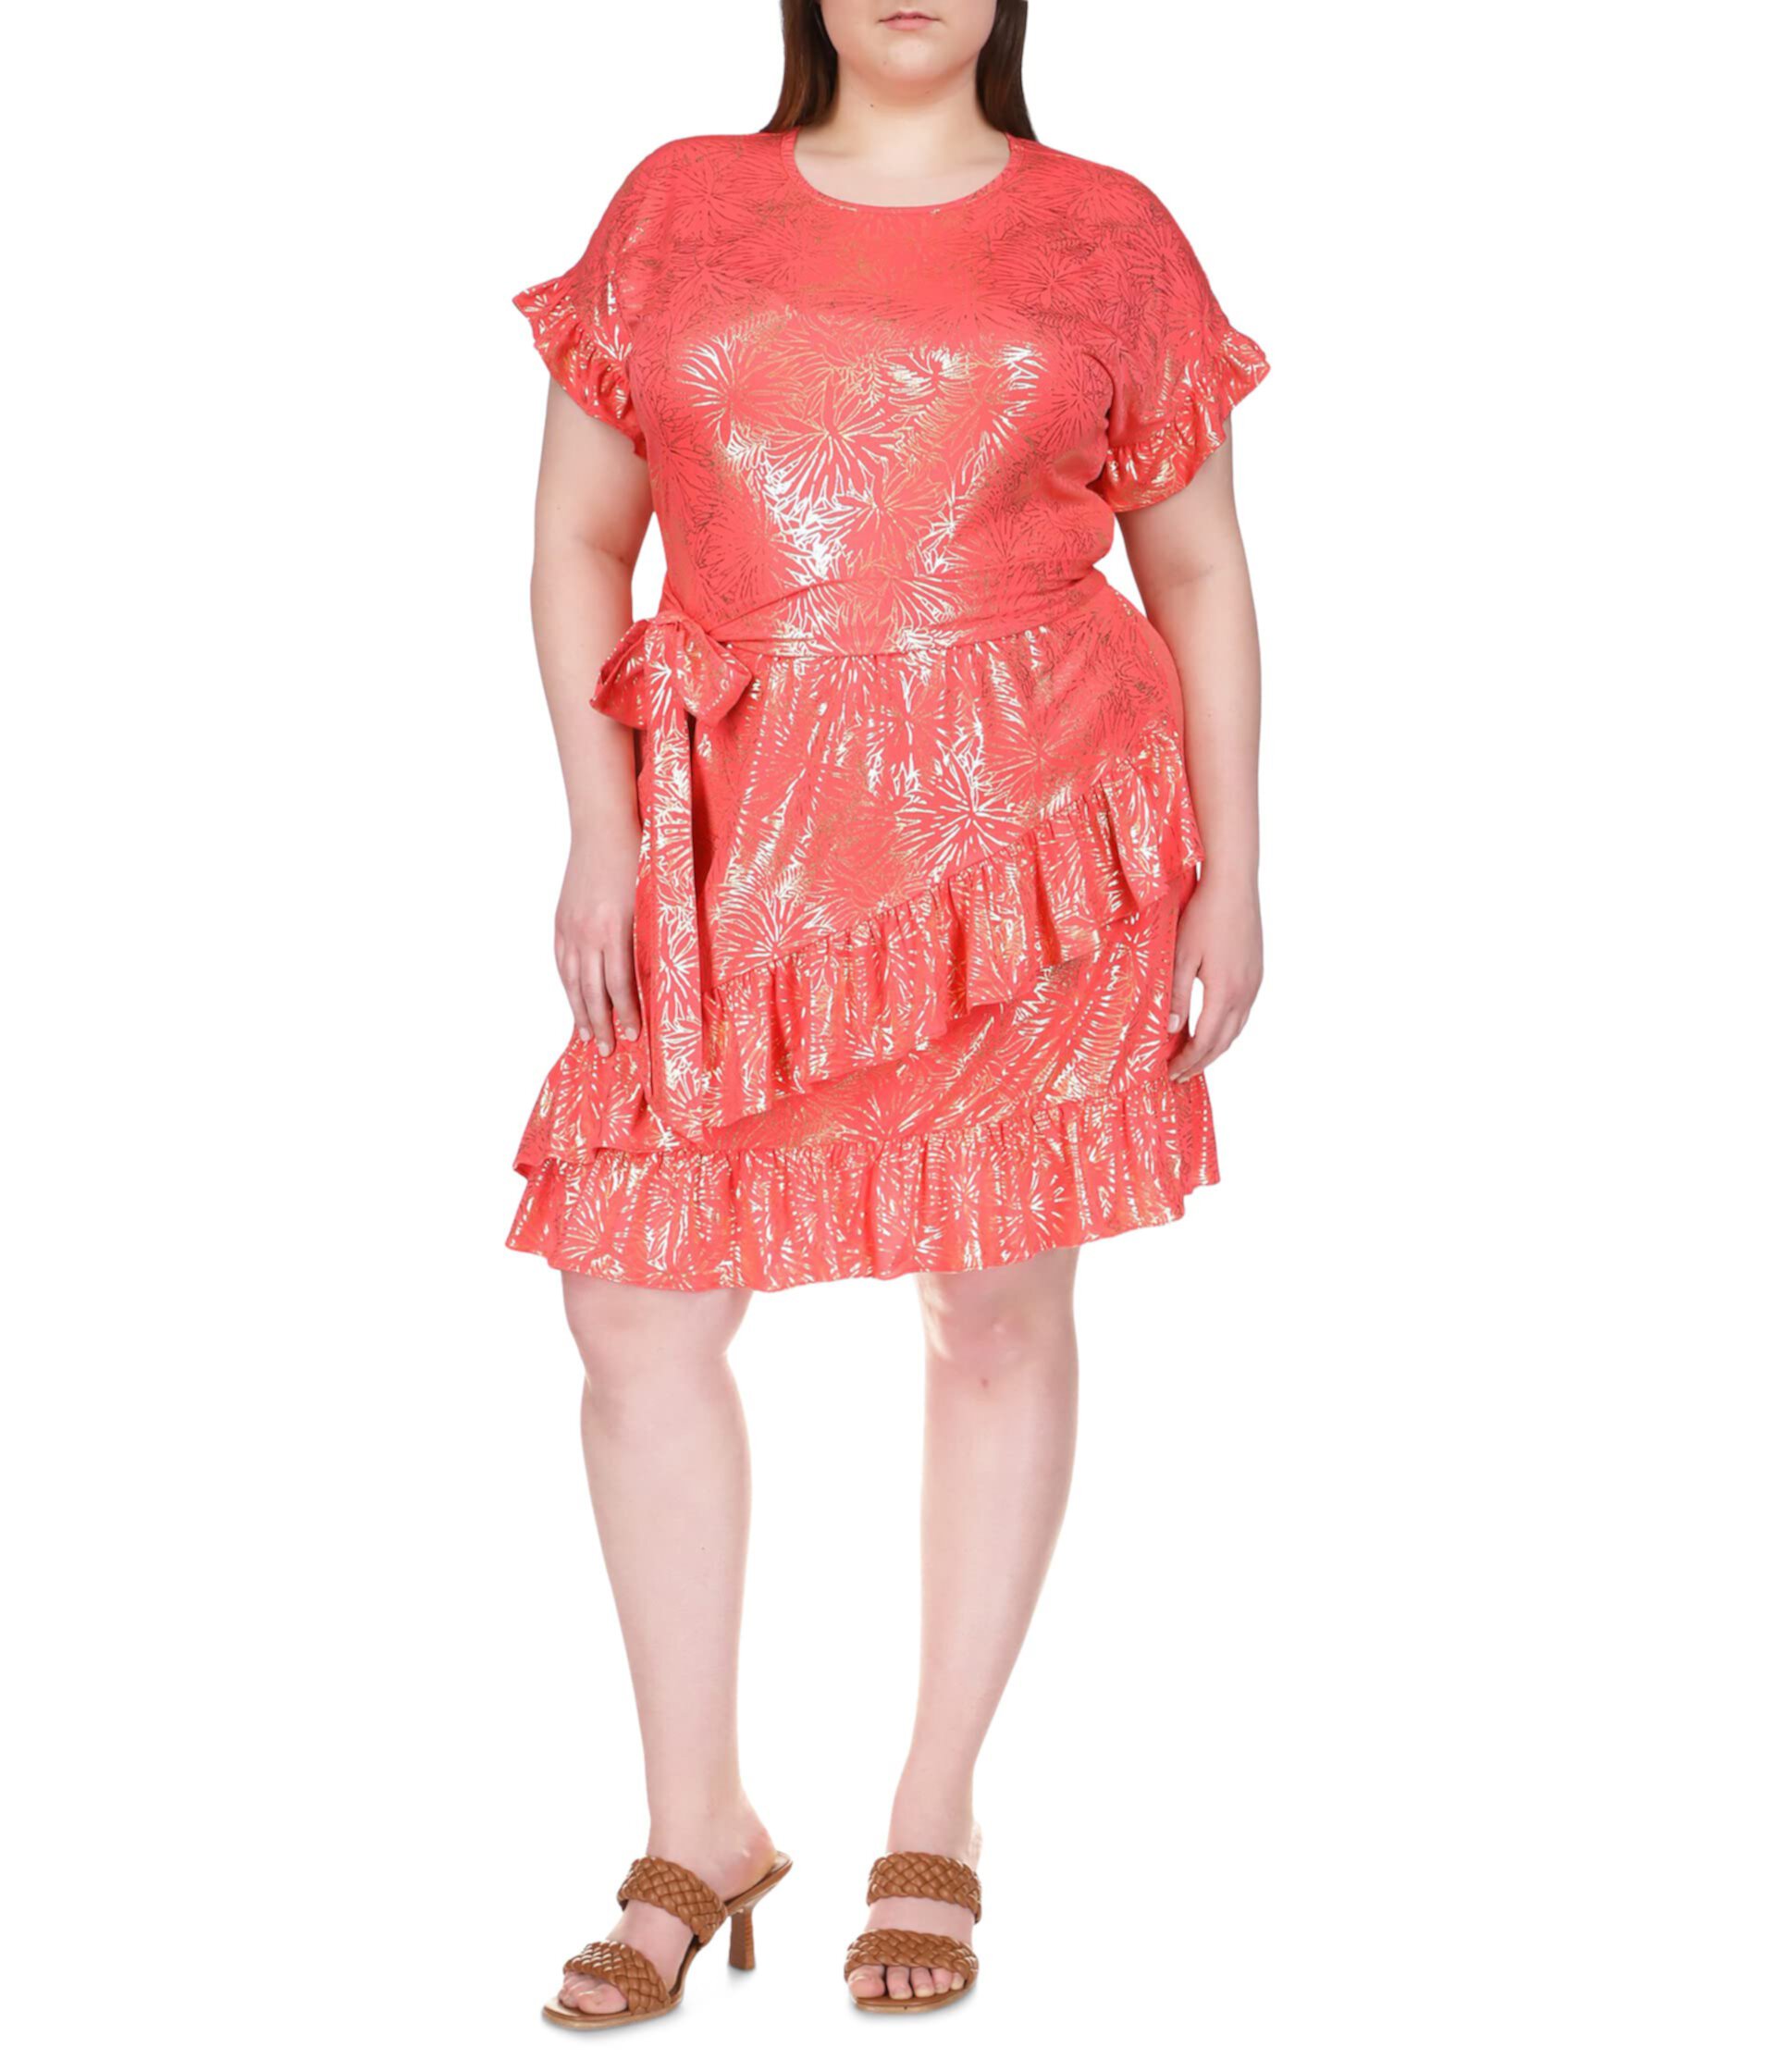 Матовое трикотажное платье с запахом и рюшами из фольги Плюс размер MICHAEL Michael Kors